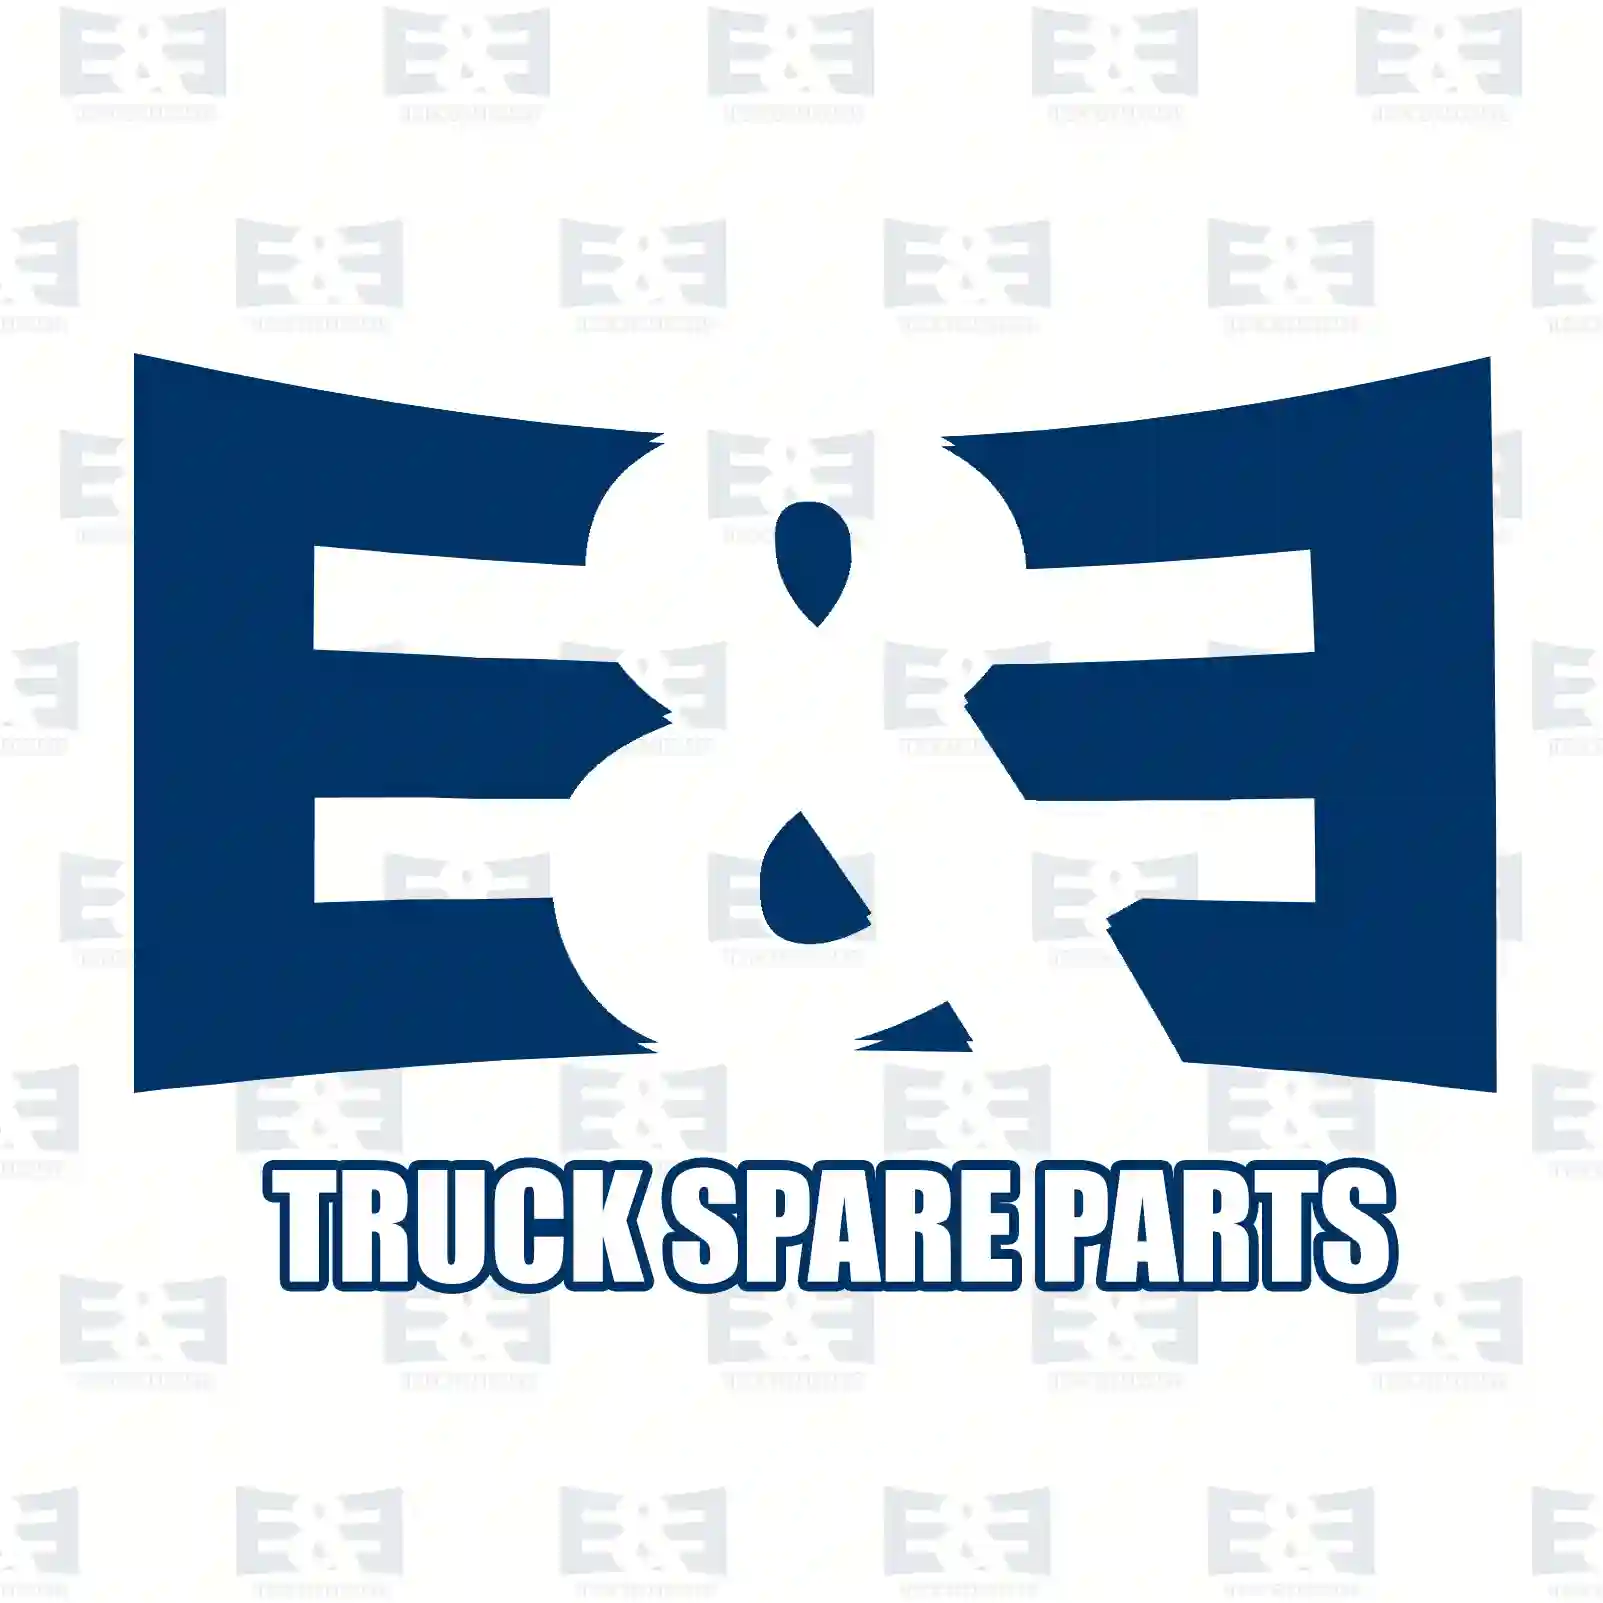 Turbocharger, 2E2200727, 04848507, 92901163, 98411632, 99458089 ||  2E2200727 E&E Truck Spare Parts | Truck Spare Parts, Auotomotive Spare Parts Turbocharger, 2E2200727, 04848507, 92901163, 98411632, 99458089 ||  2E2200727 E&E Truck Spare Parts | Truck Spare Parts, Auotomotive Spare Parts